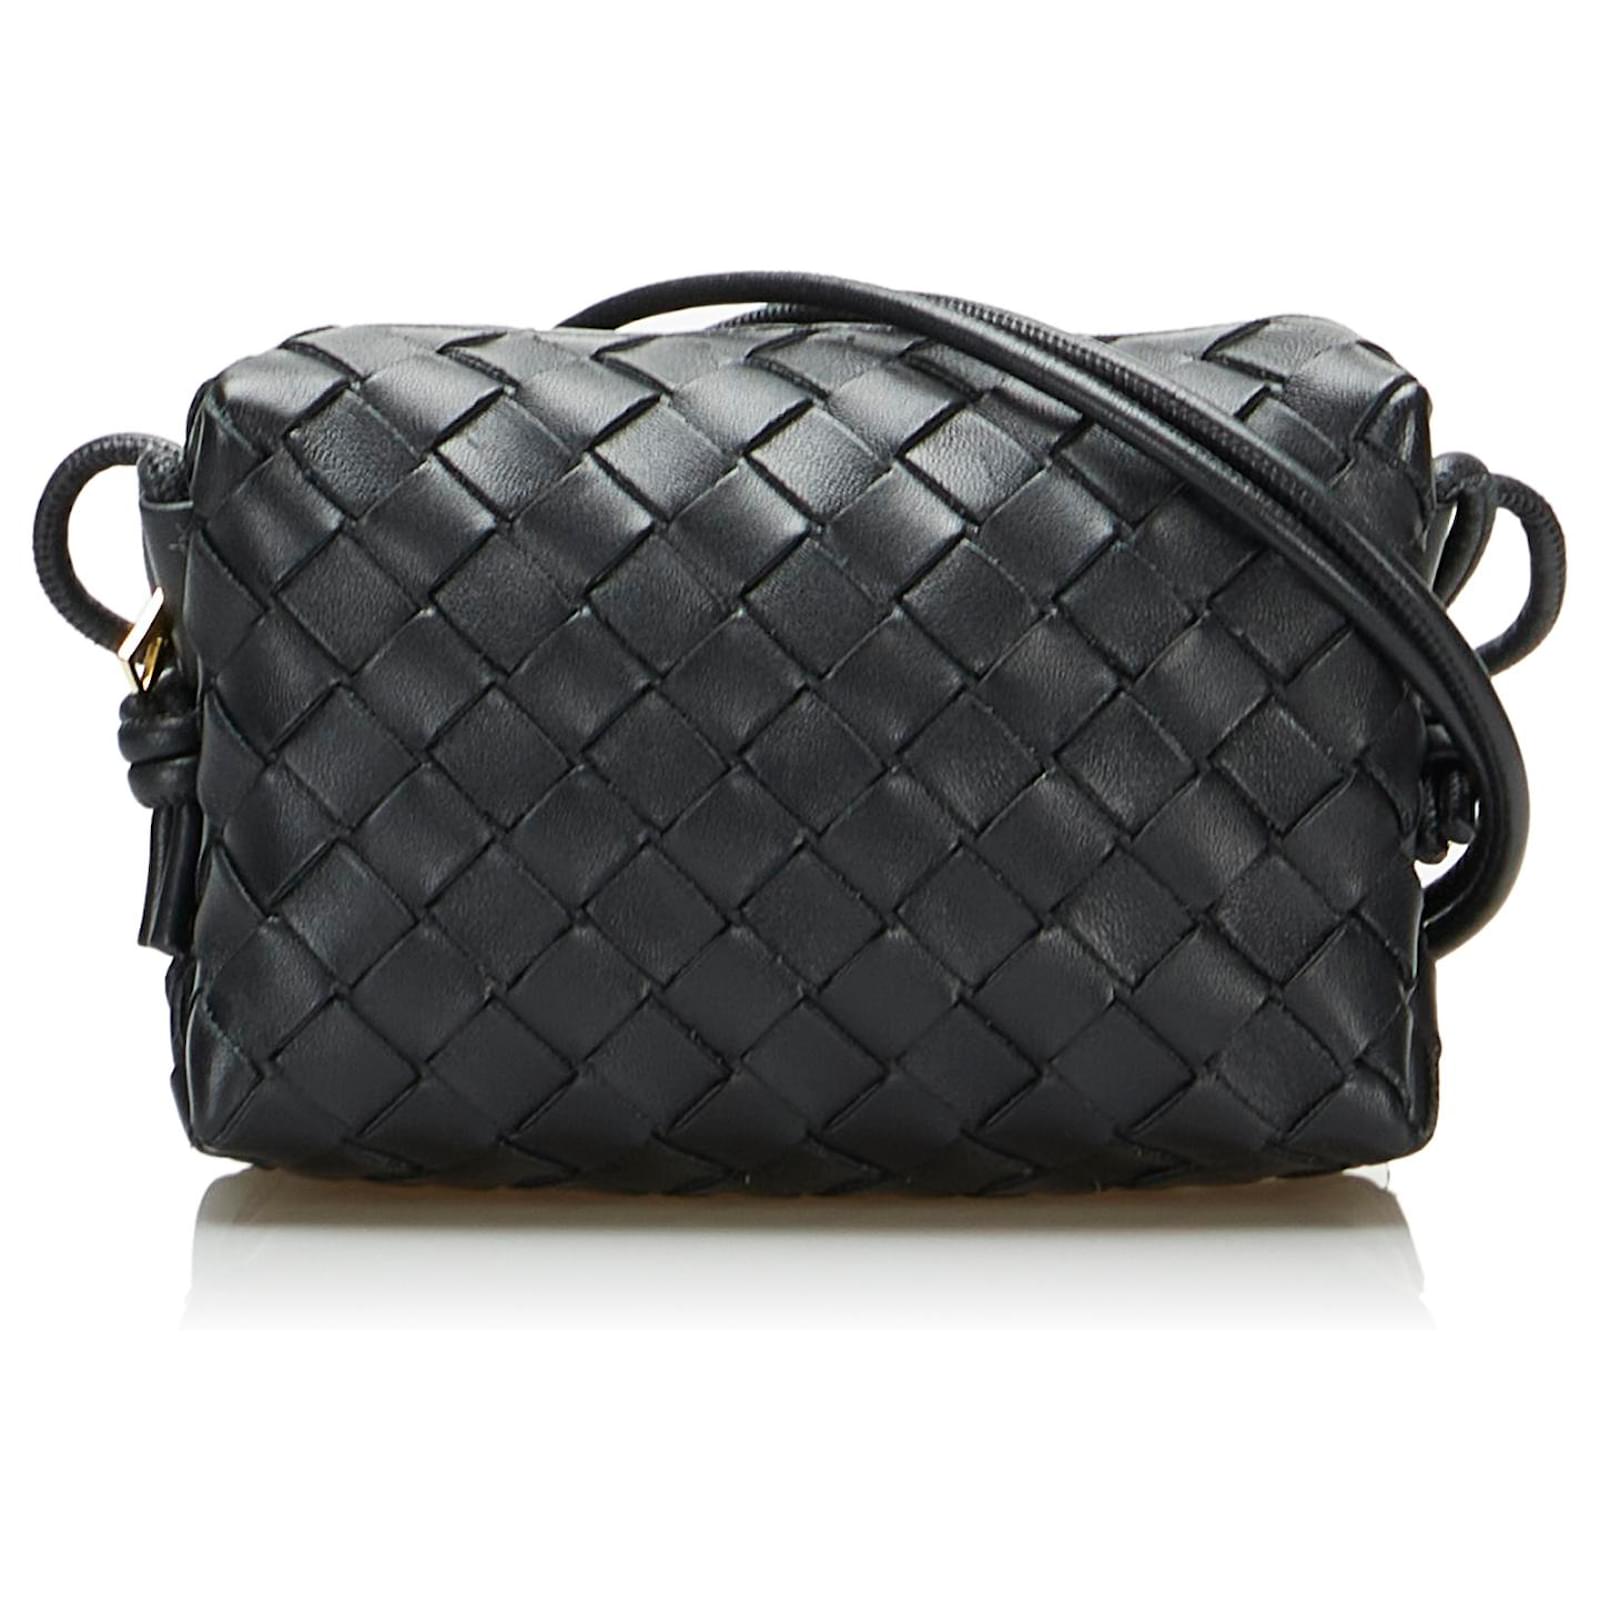 Bottega Veneta - Loop Black Leather Mini Bag